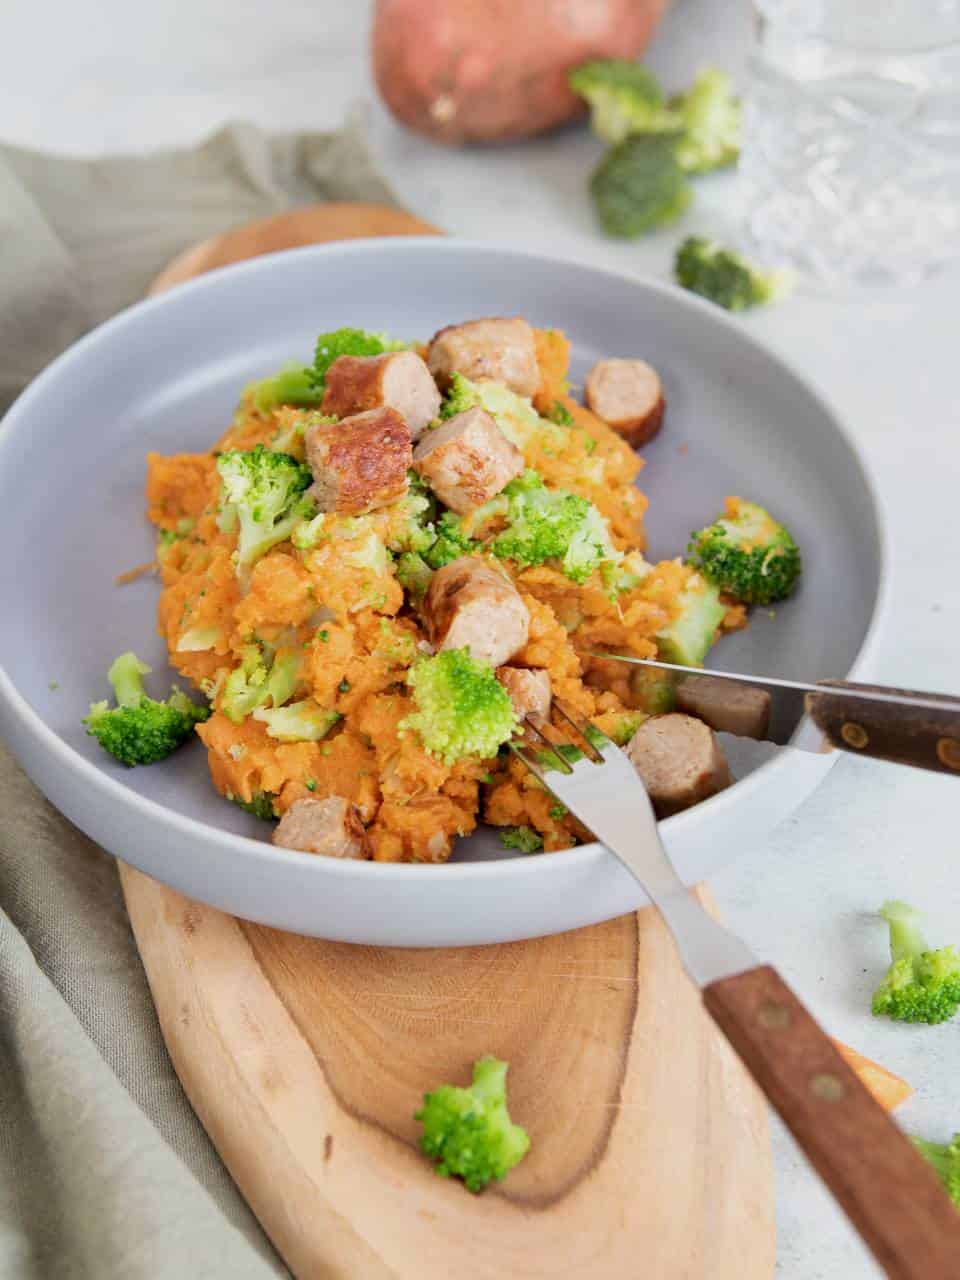 Zoete aardappel stamppot met broccoli. Stamppot recept, zoete aardappel recept, een makkelijke gezonde maaltijd